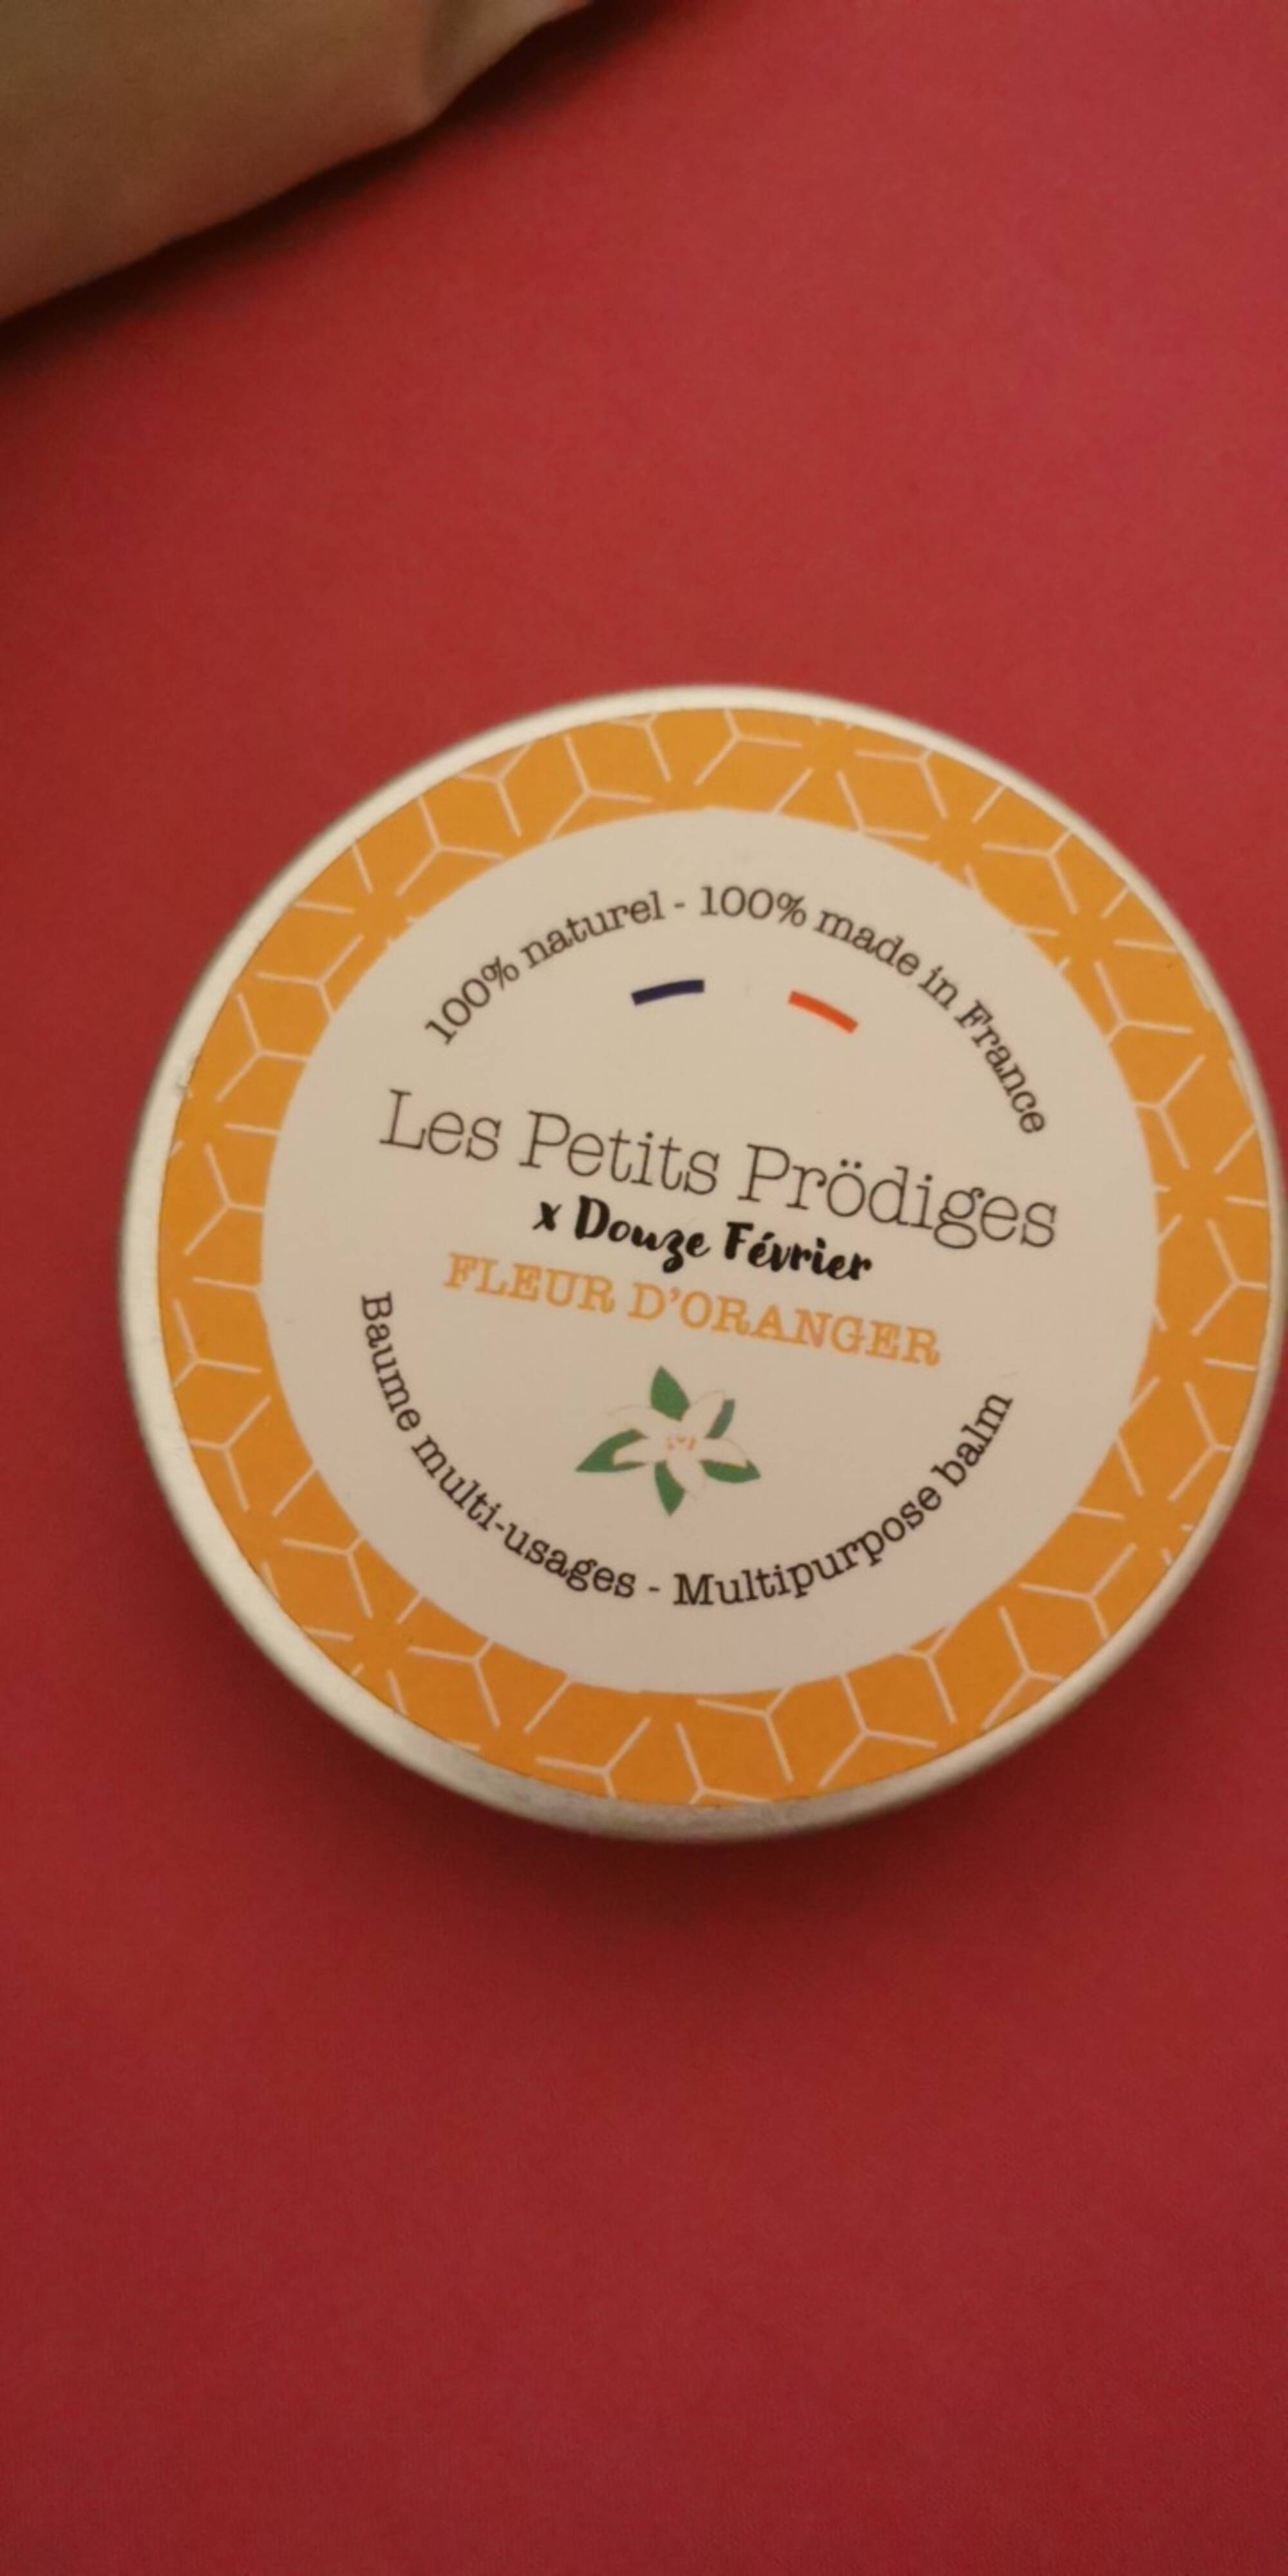 LES PETITS PRÖDIGES - Fleur d'Oranger - Baume multi-usages